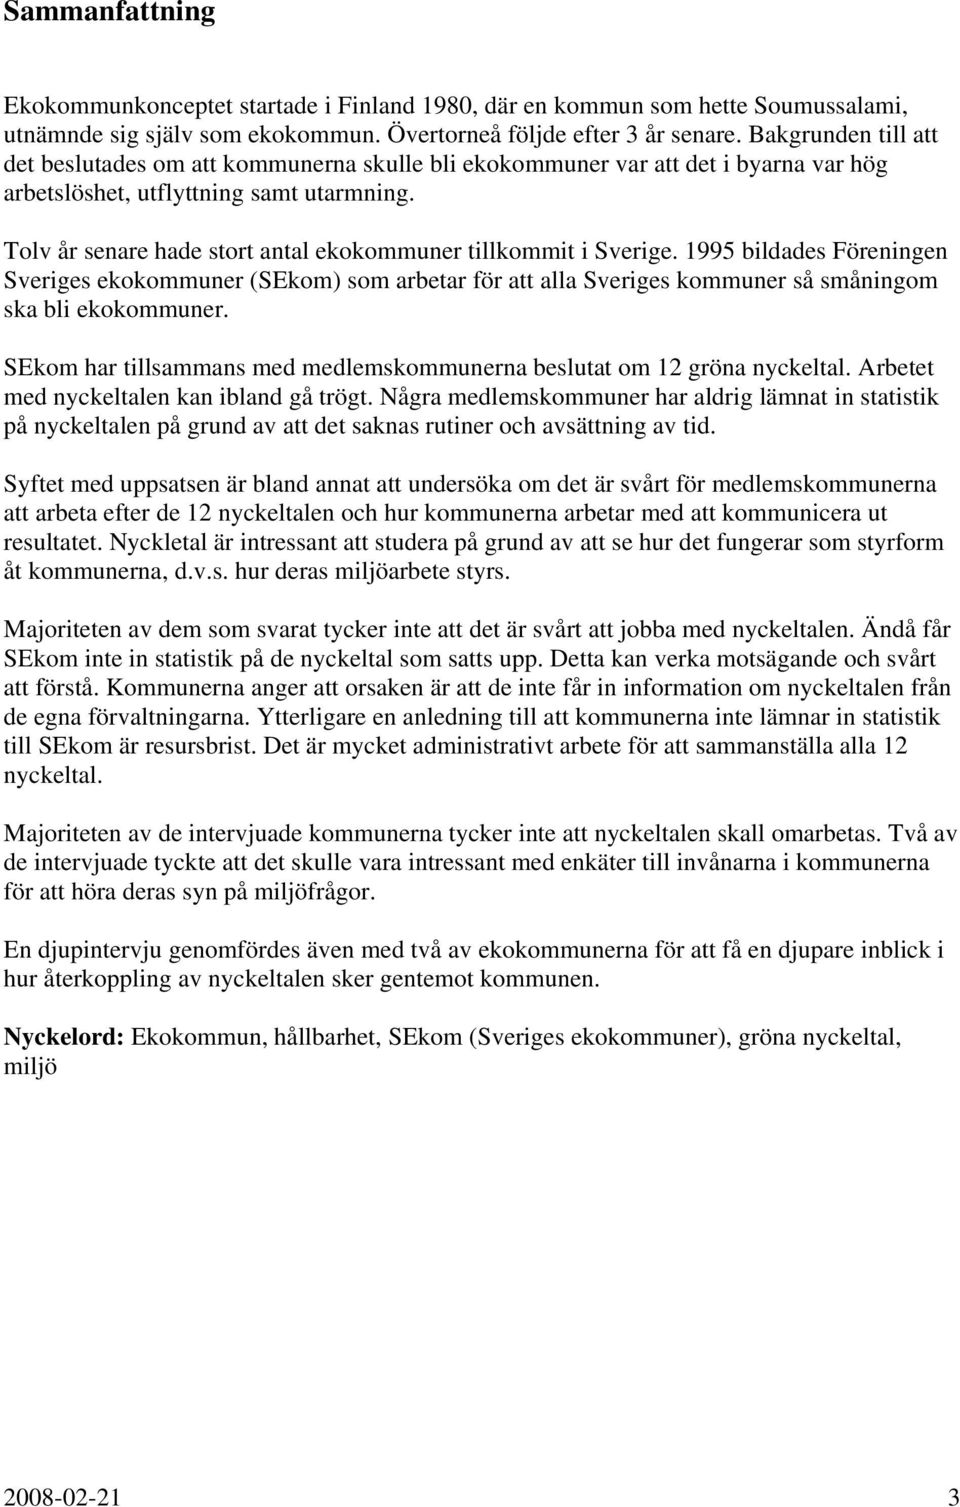 Tolv år senare hade stort antal ekokommuner tillkommit i Sverige. 1995 bildades Föreningen Sveriges ekokommuner (SEkom) som arbetar för att alla Sveriges kommuner så småningom ska bli ekokommuner.